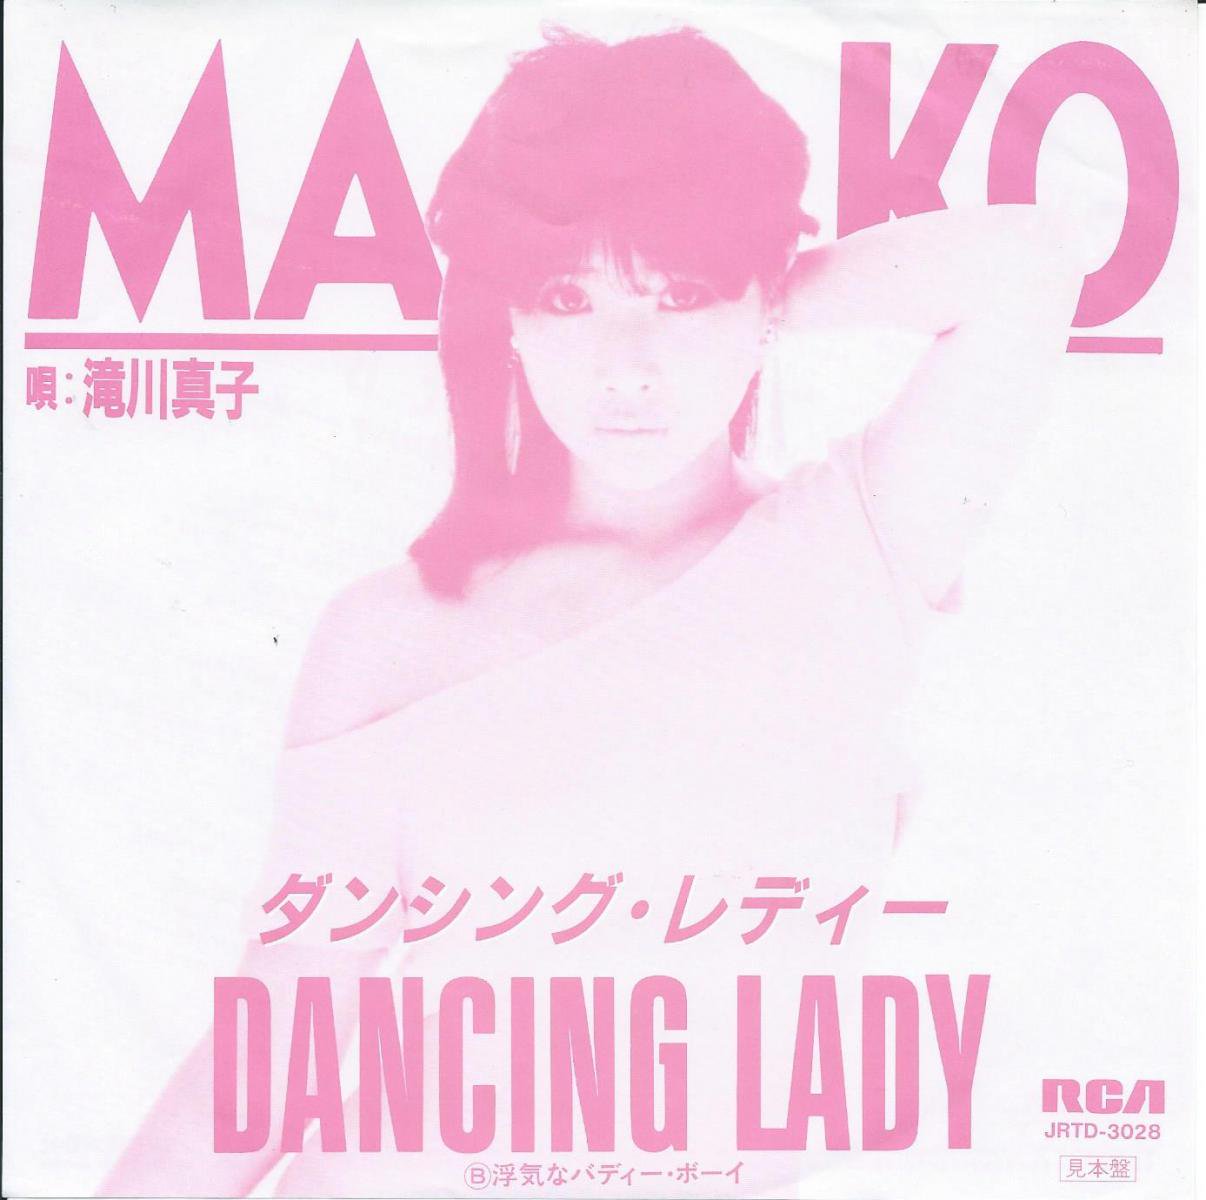 滝川真子 MAKO TAKIGAWA / ダンシング・レディー DANCING LADY / 浮気